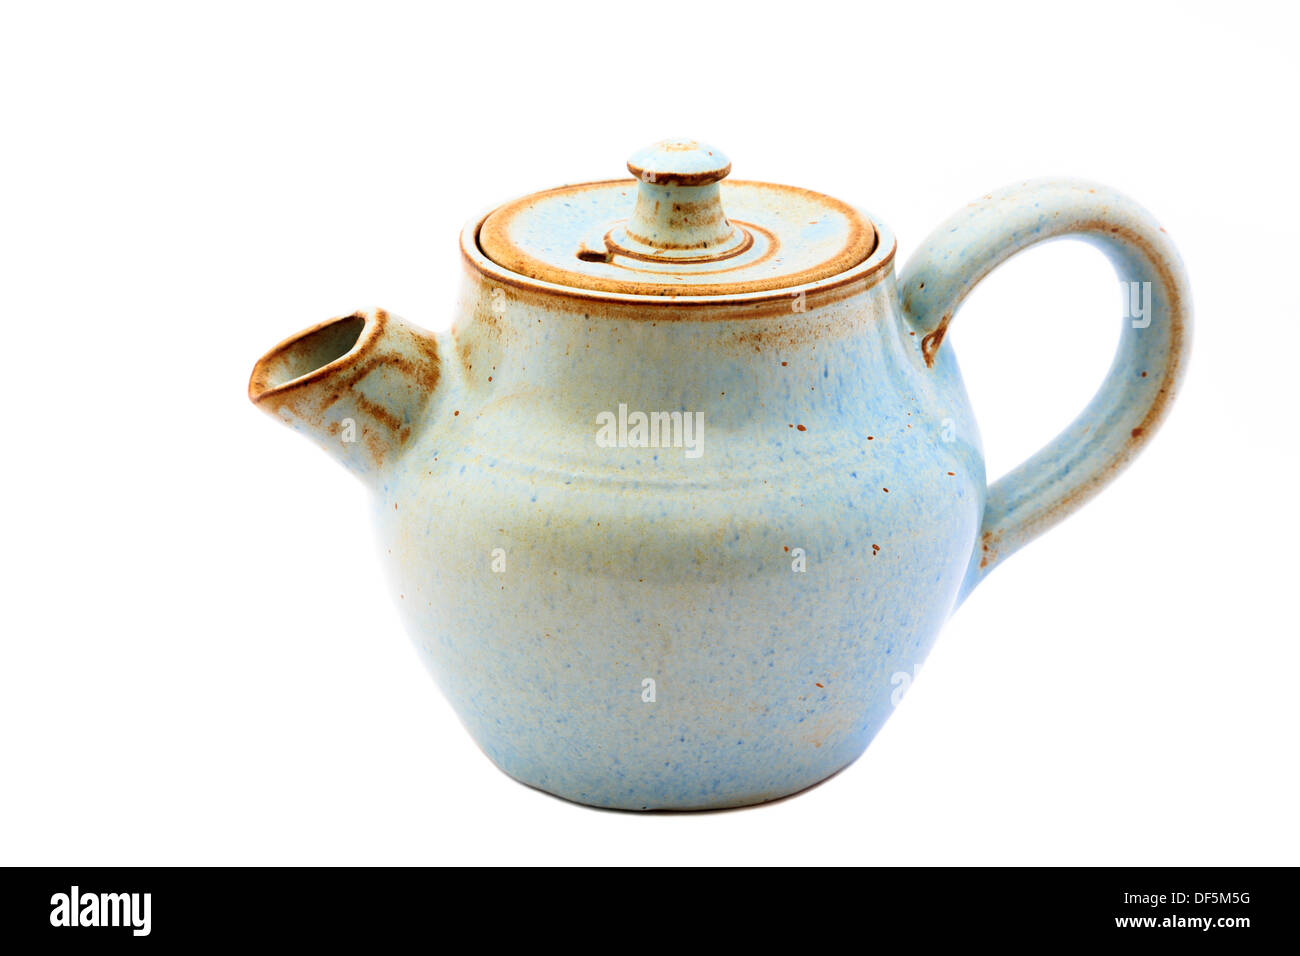 Petite théière en poterie céramique (tea pot) découper et isolé sur un fond blanc. Angleterre Royaume-uni Grande-Bretagne Banque D'Images